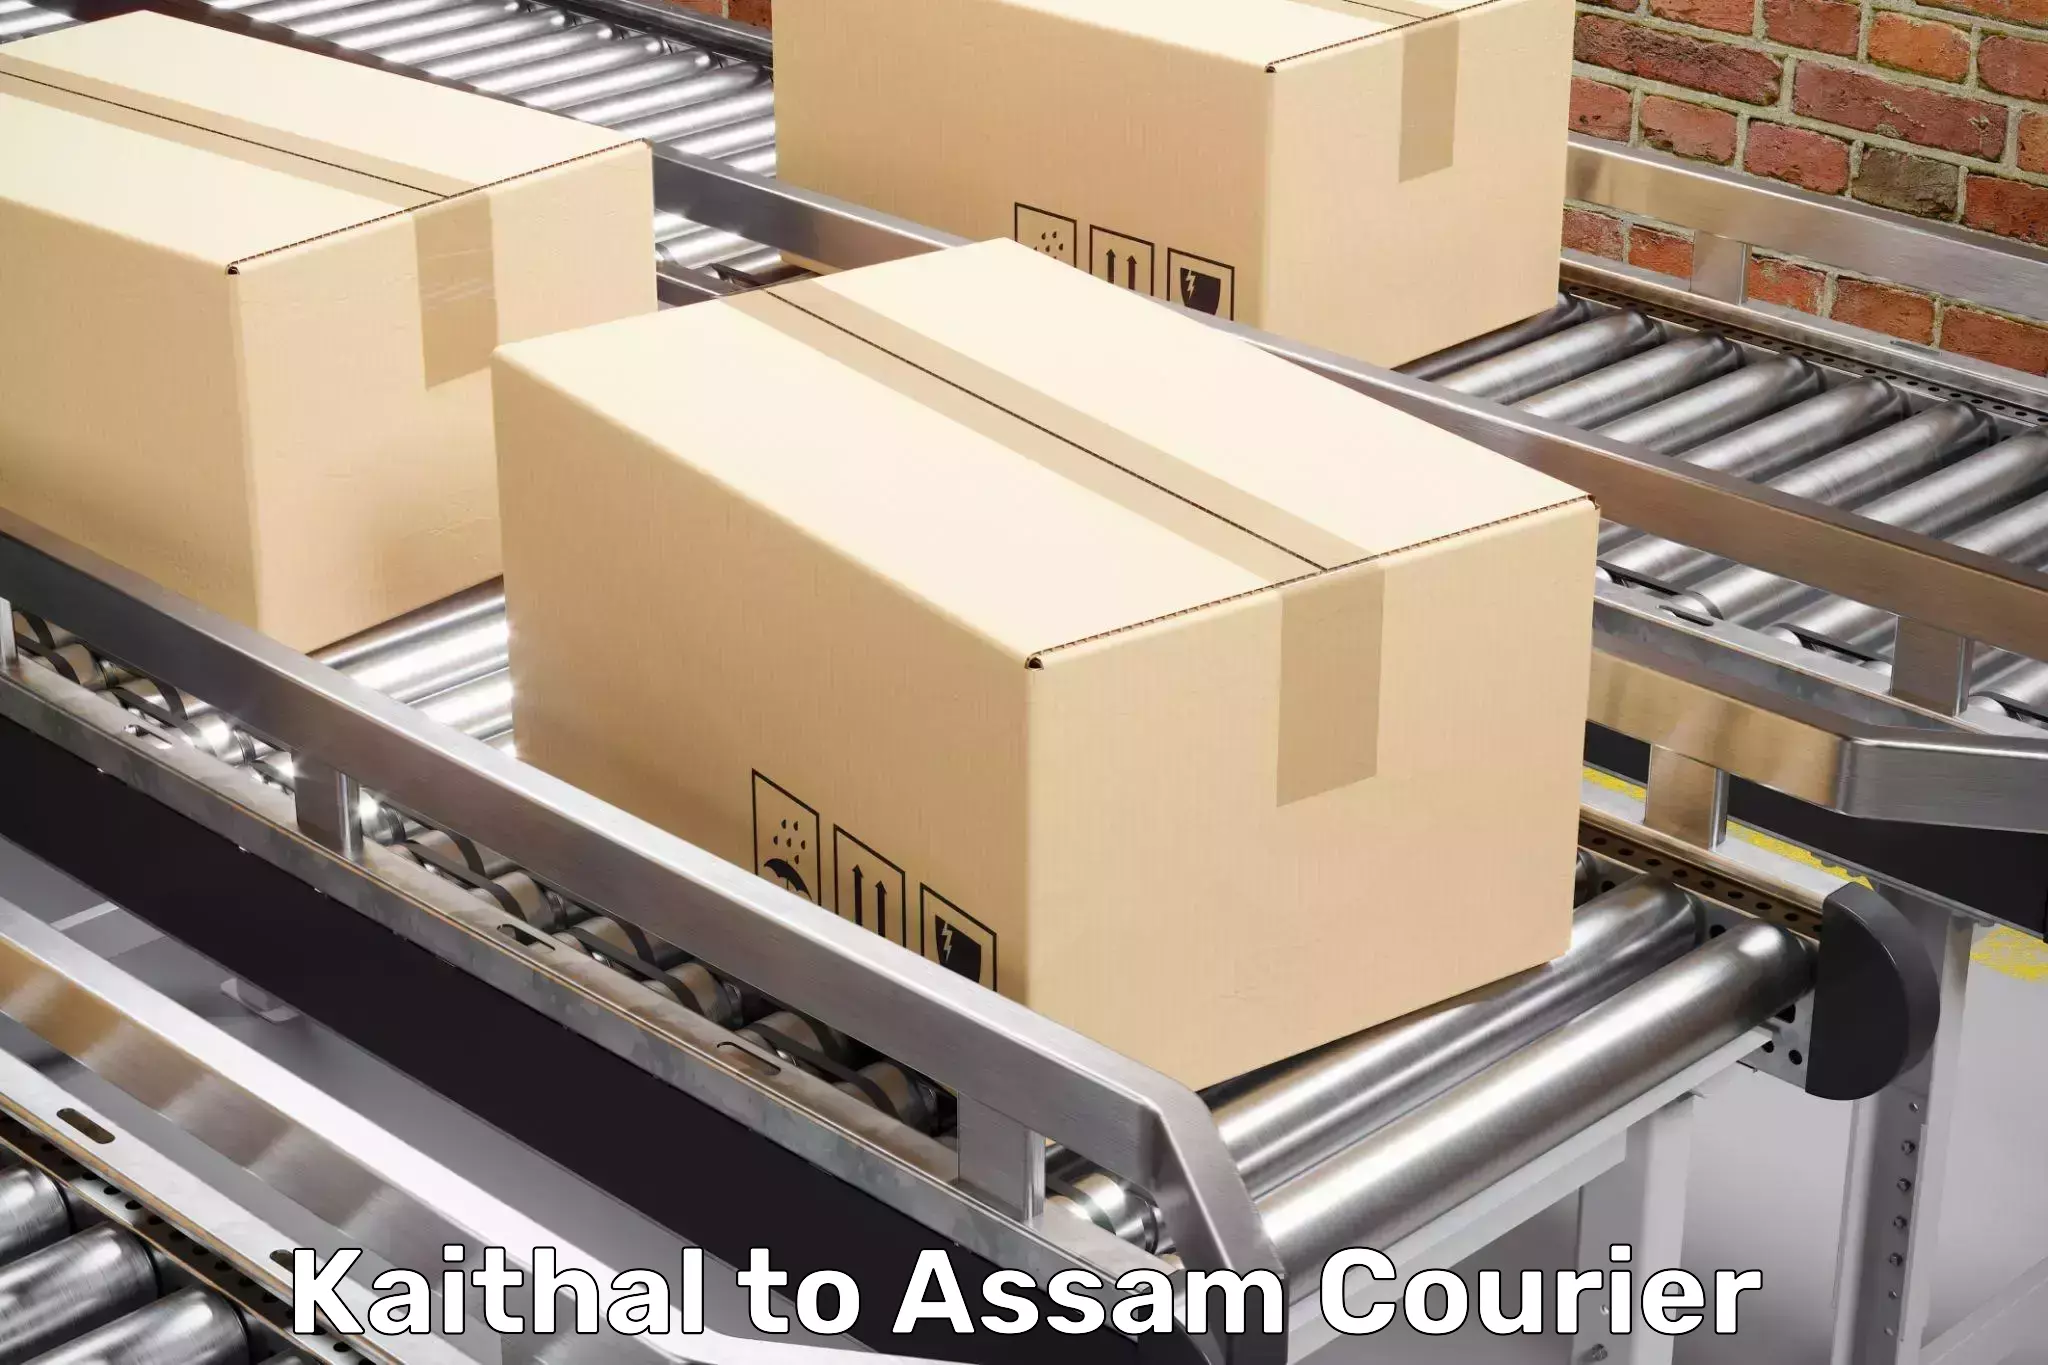 Household logistics services Kaithal to Udalguri